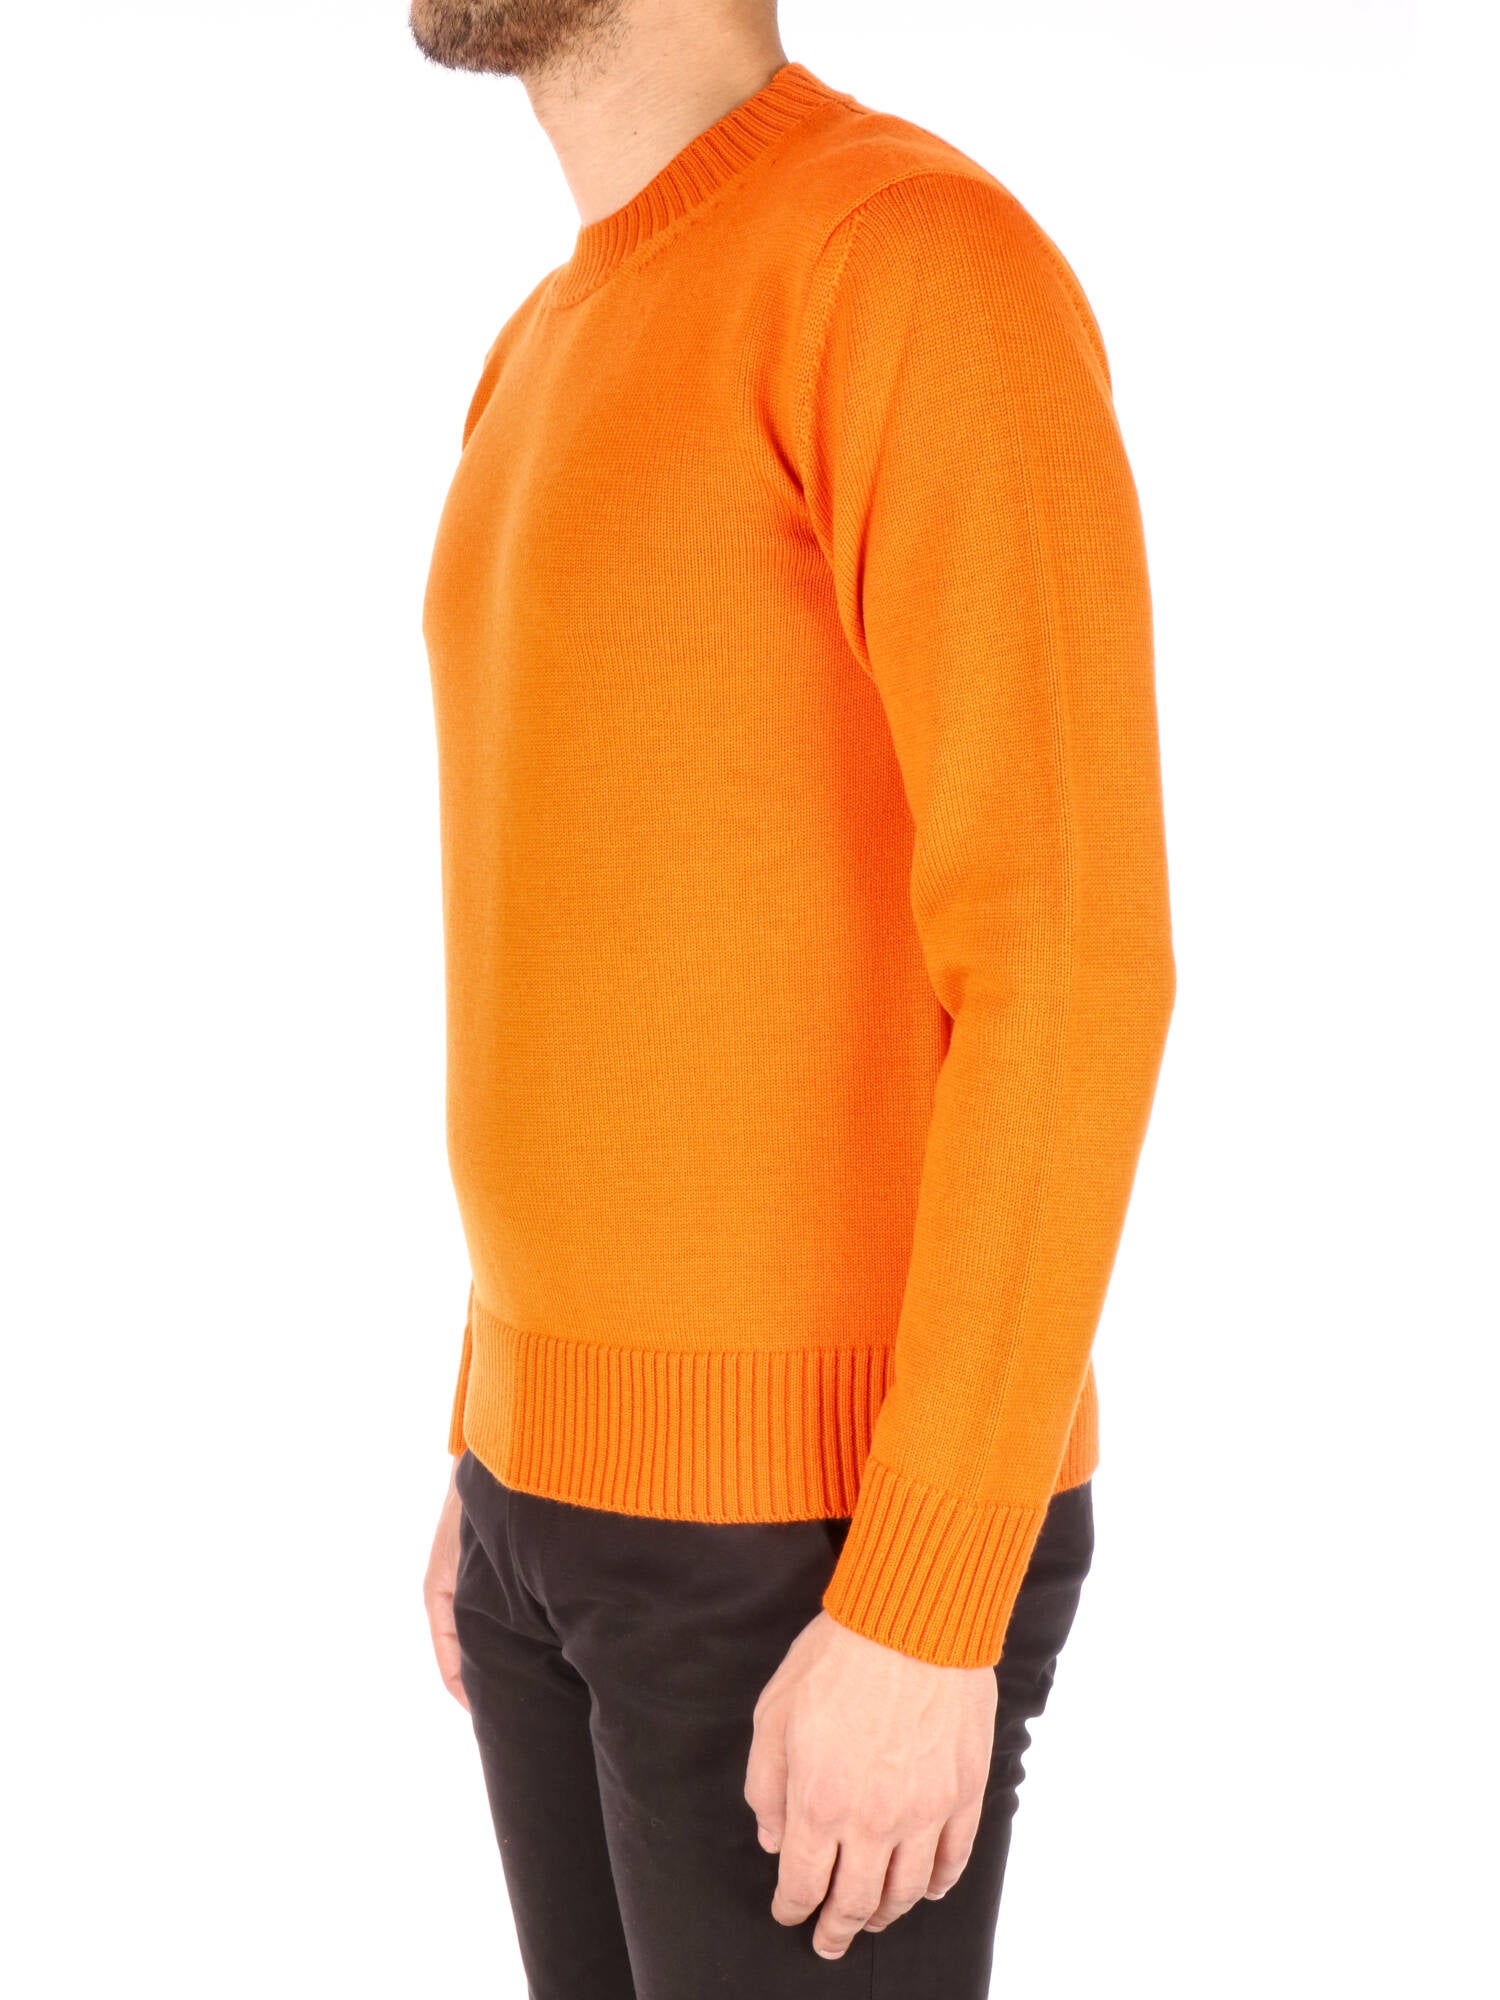 Altea uomo maglione girocollo lana arancione